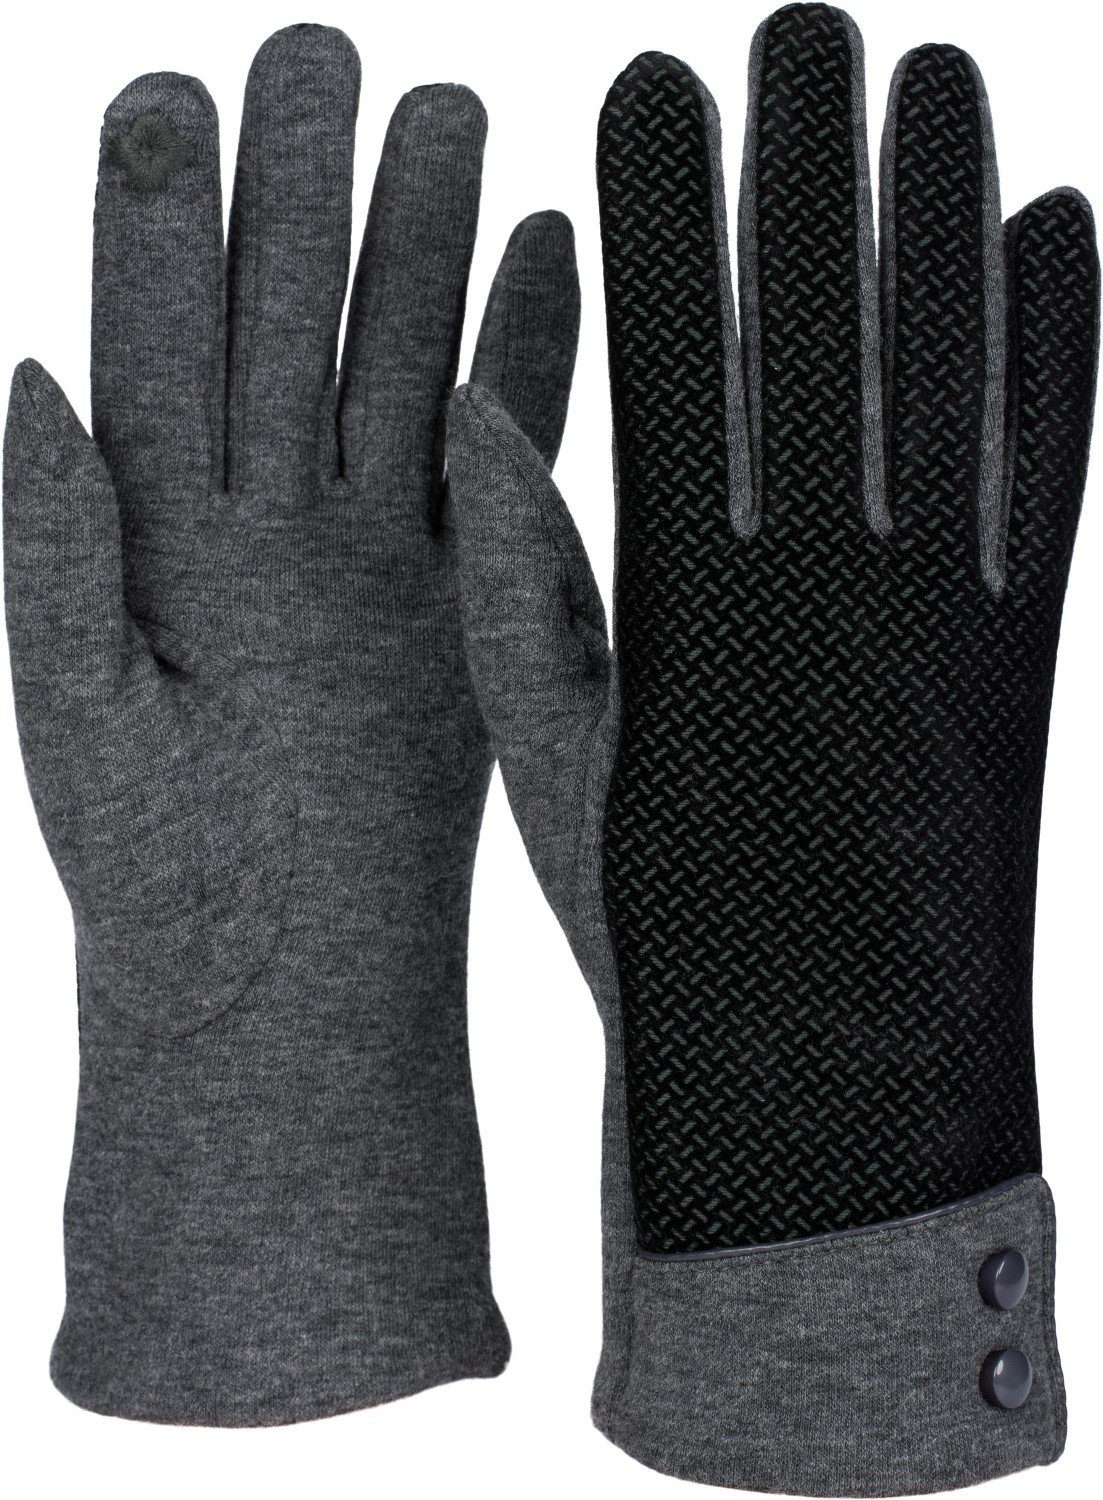 styleBREAKER Baumwollhandschuhe Touchscreen Handschuhe mit weichem Riffel  Muster online kaufen | OTTO